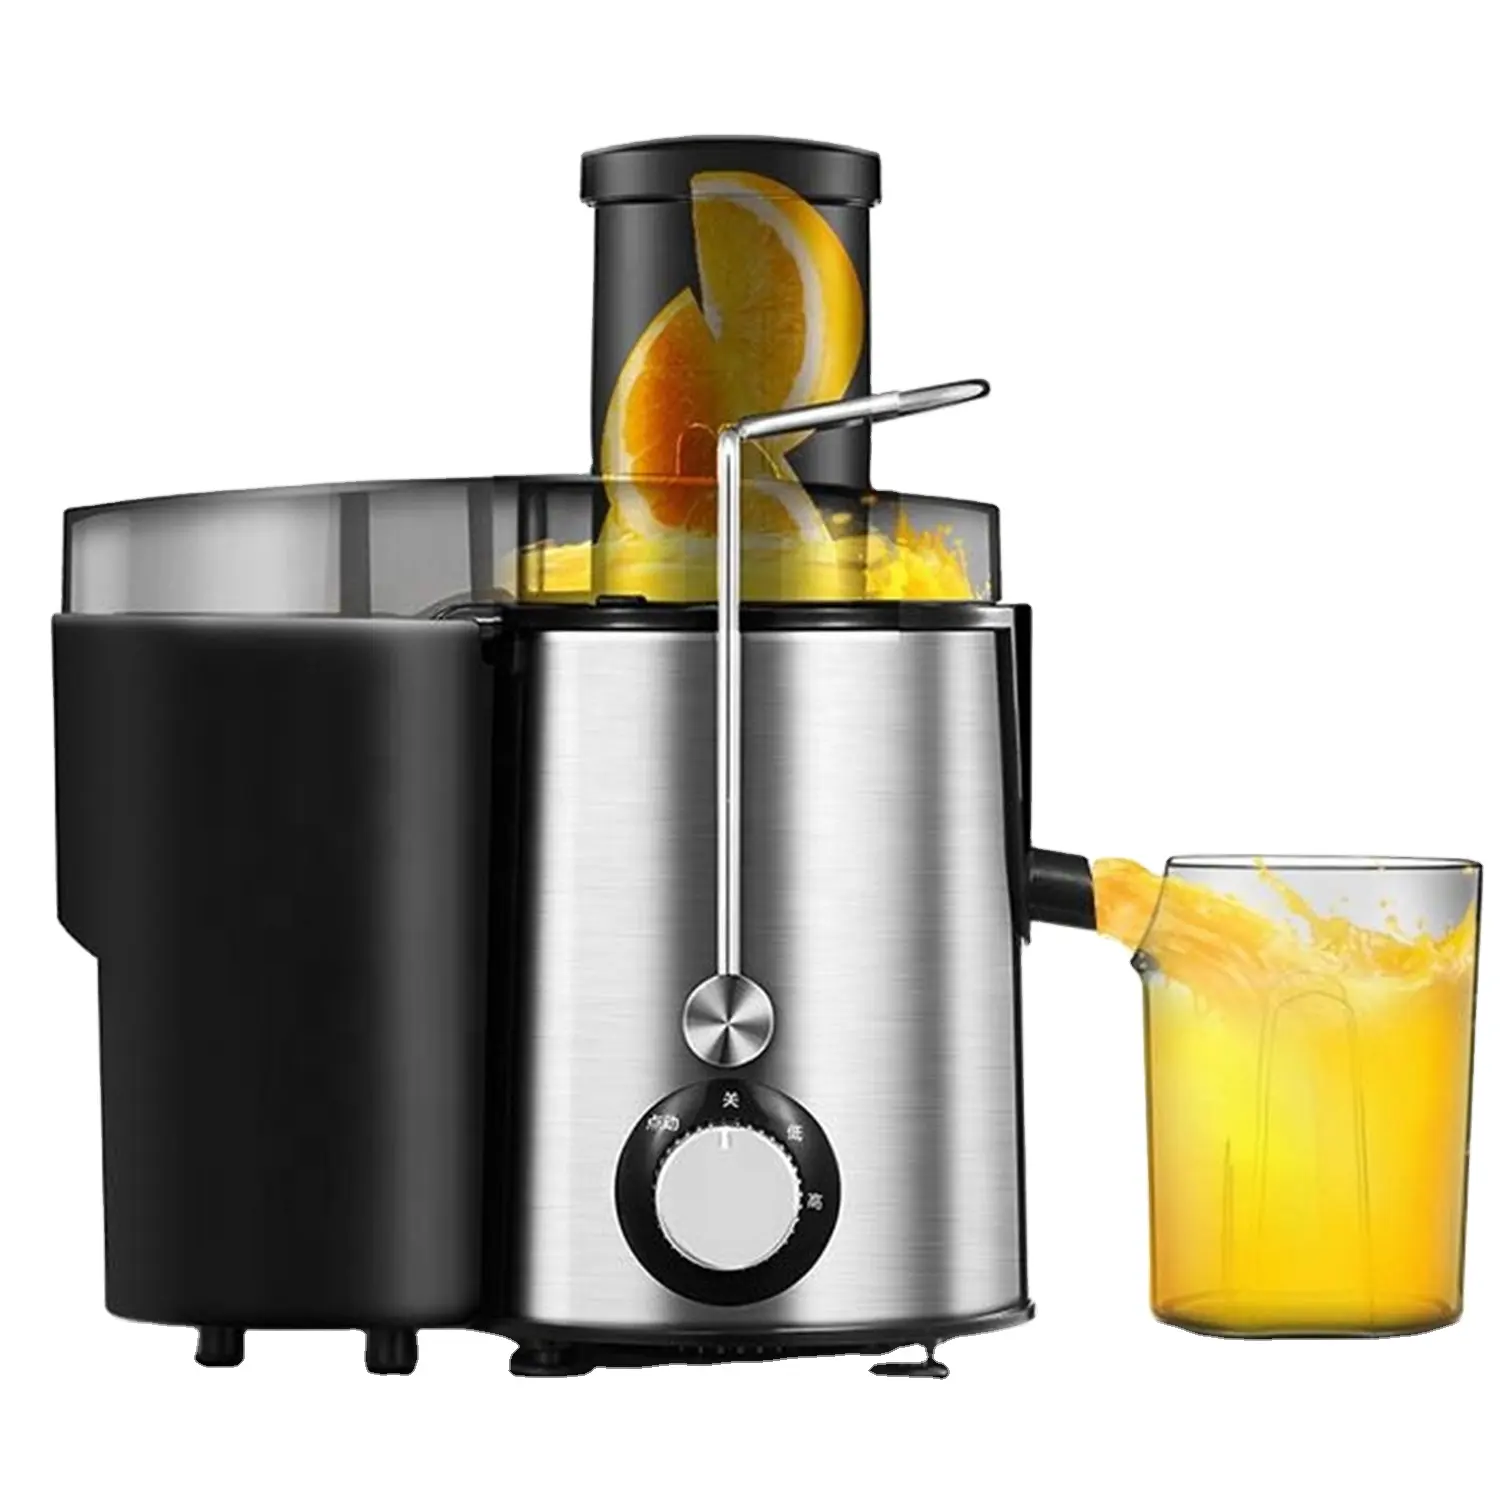 MJ Wholesale fruit juicer centrifugal juicer fast juicer extractor